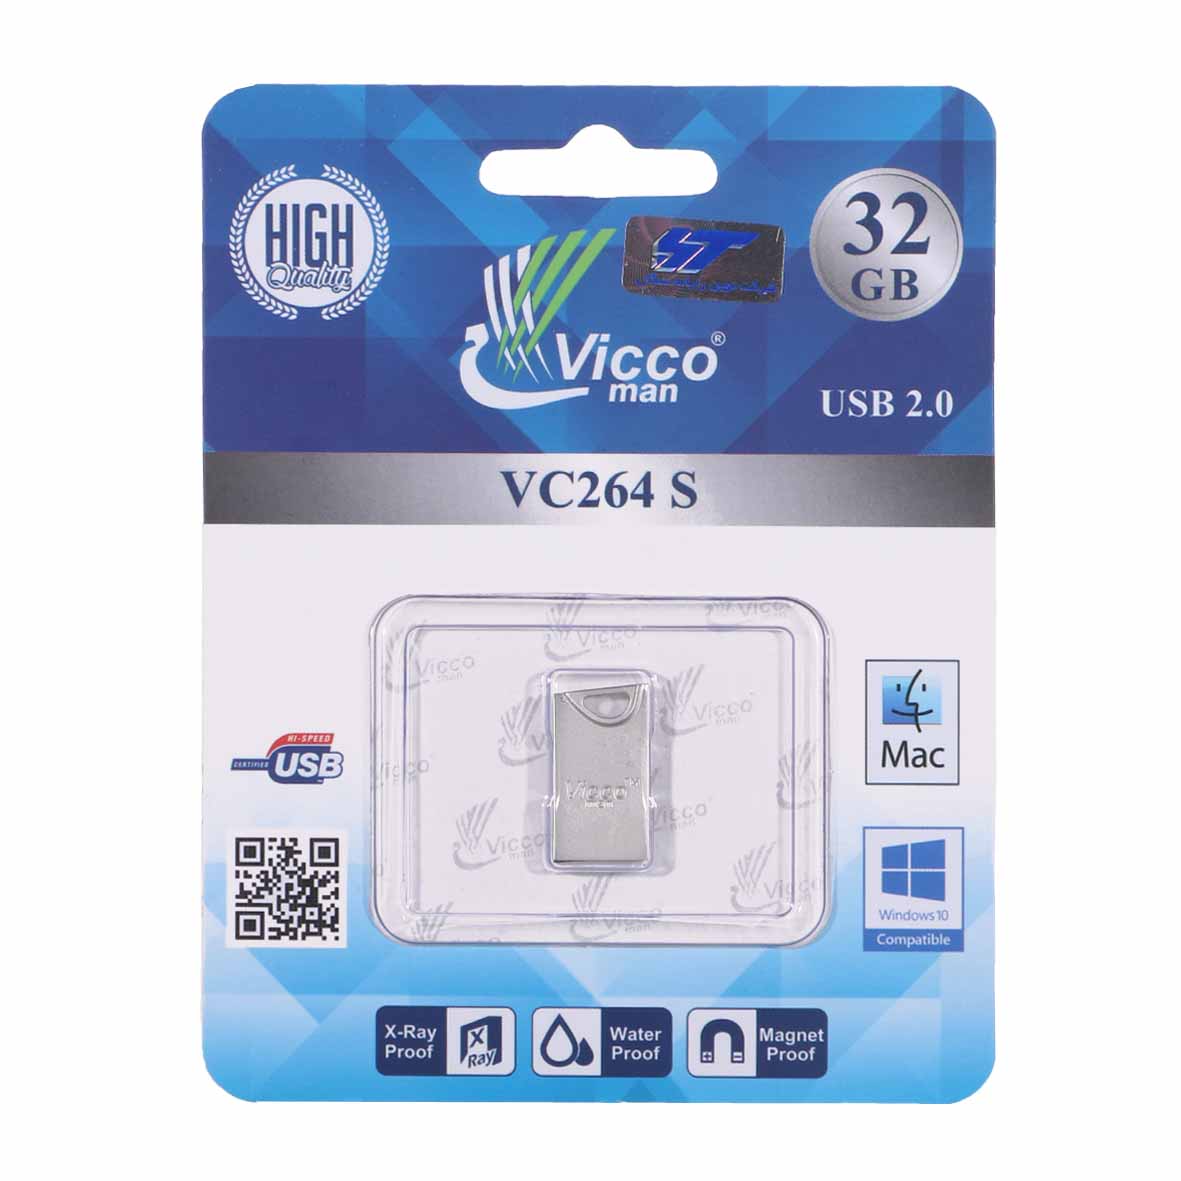 فلش   Vicco man VC264 S USB2.0 Flash Memory-32GB نقره ای - قیمت: ۱۴۵,۰۰۰ تومان